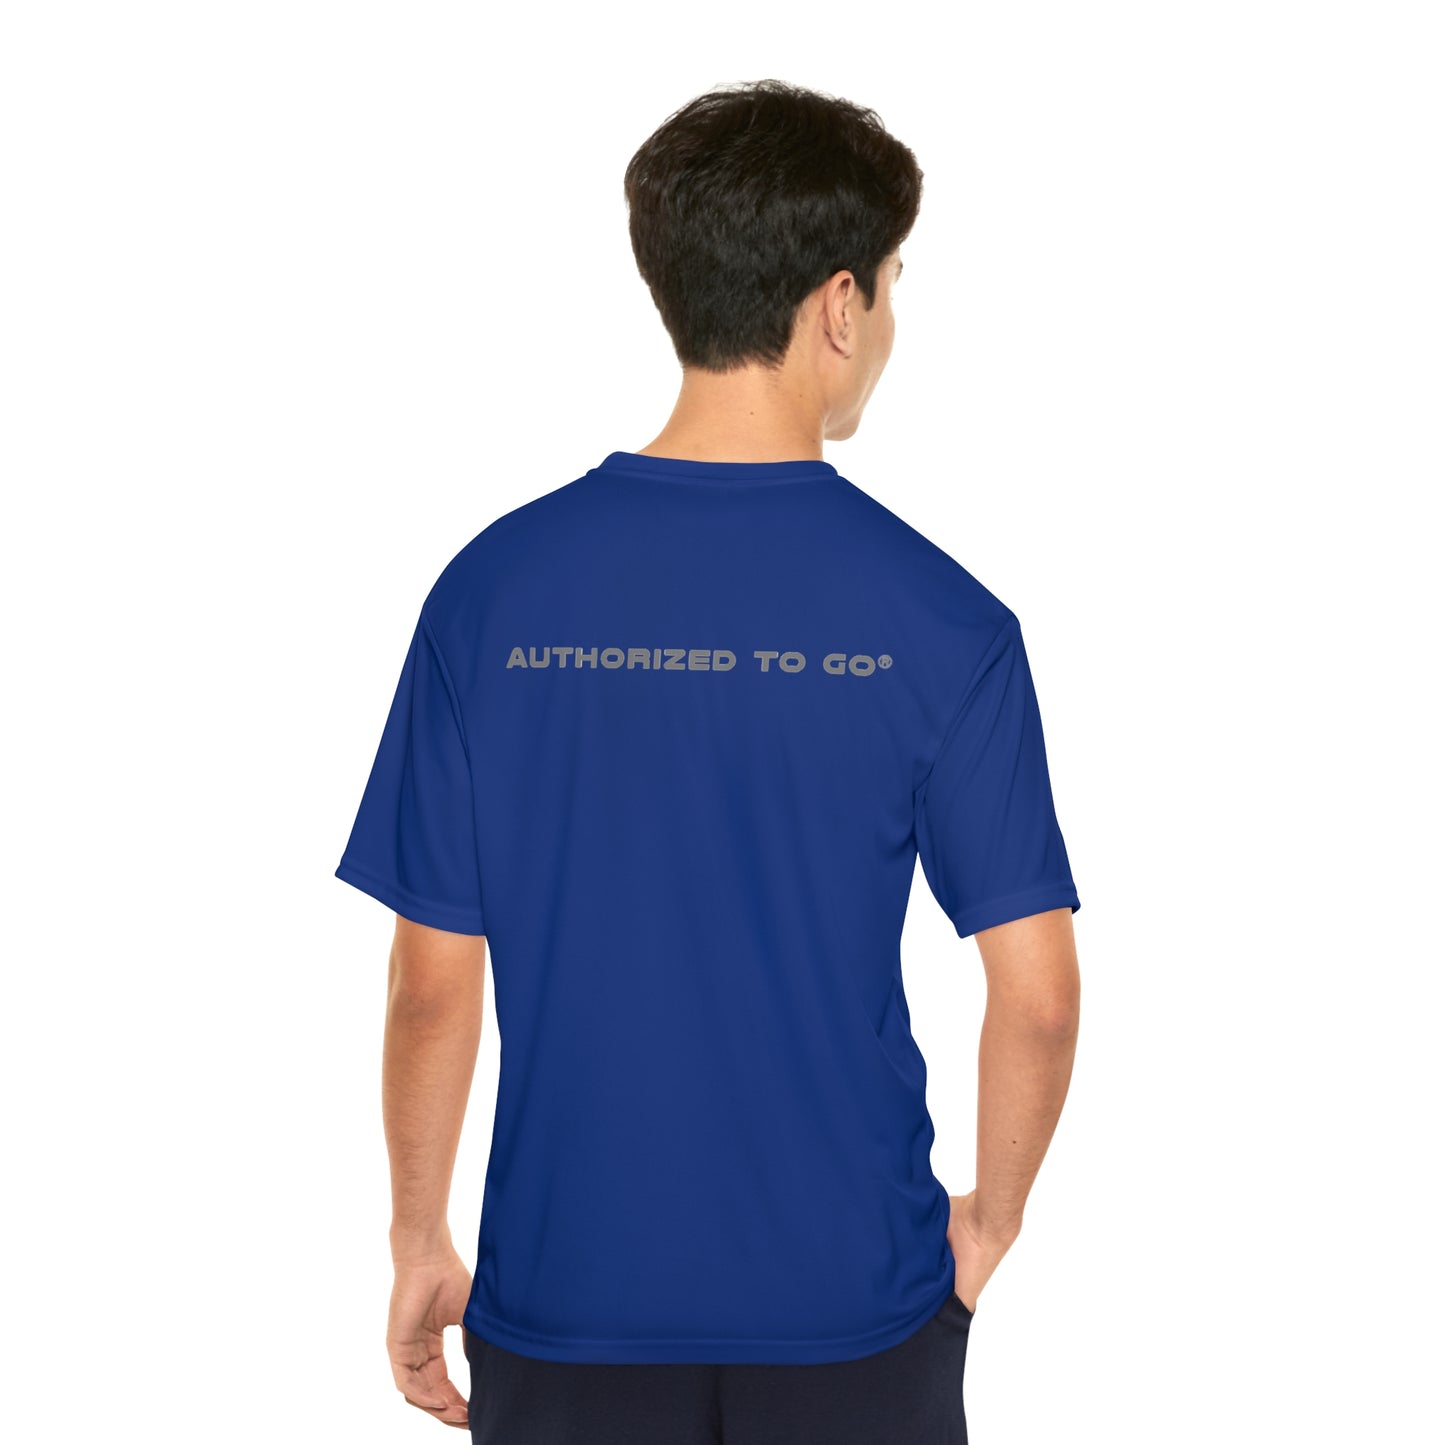 "CODE HEATGEAR" Men's Performance T-Shirt